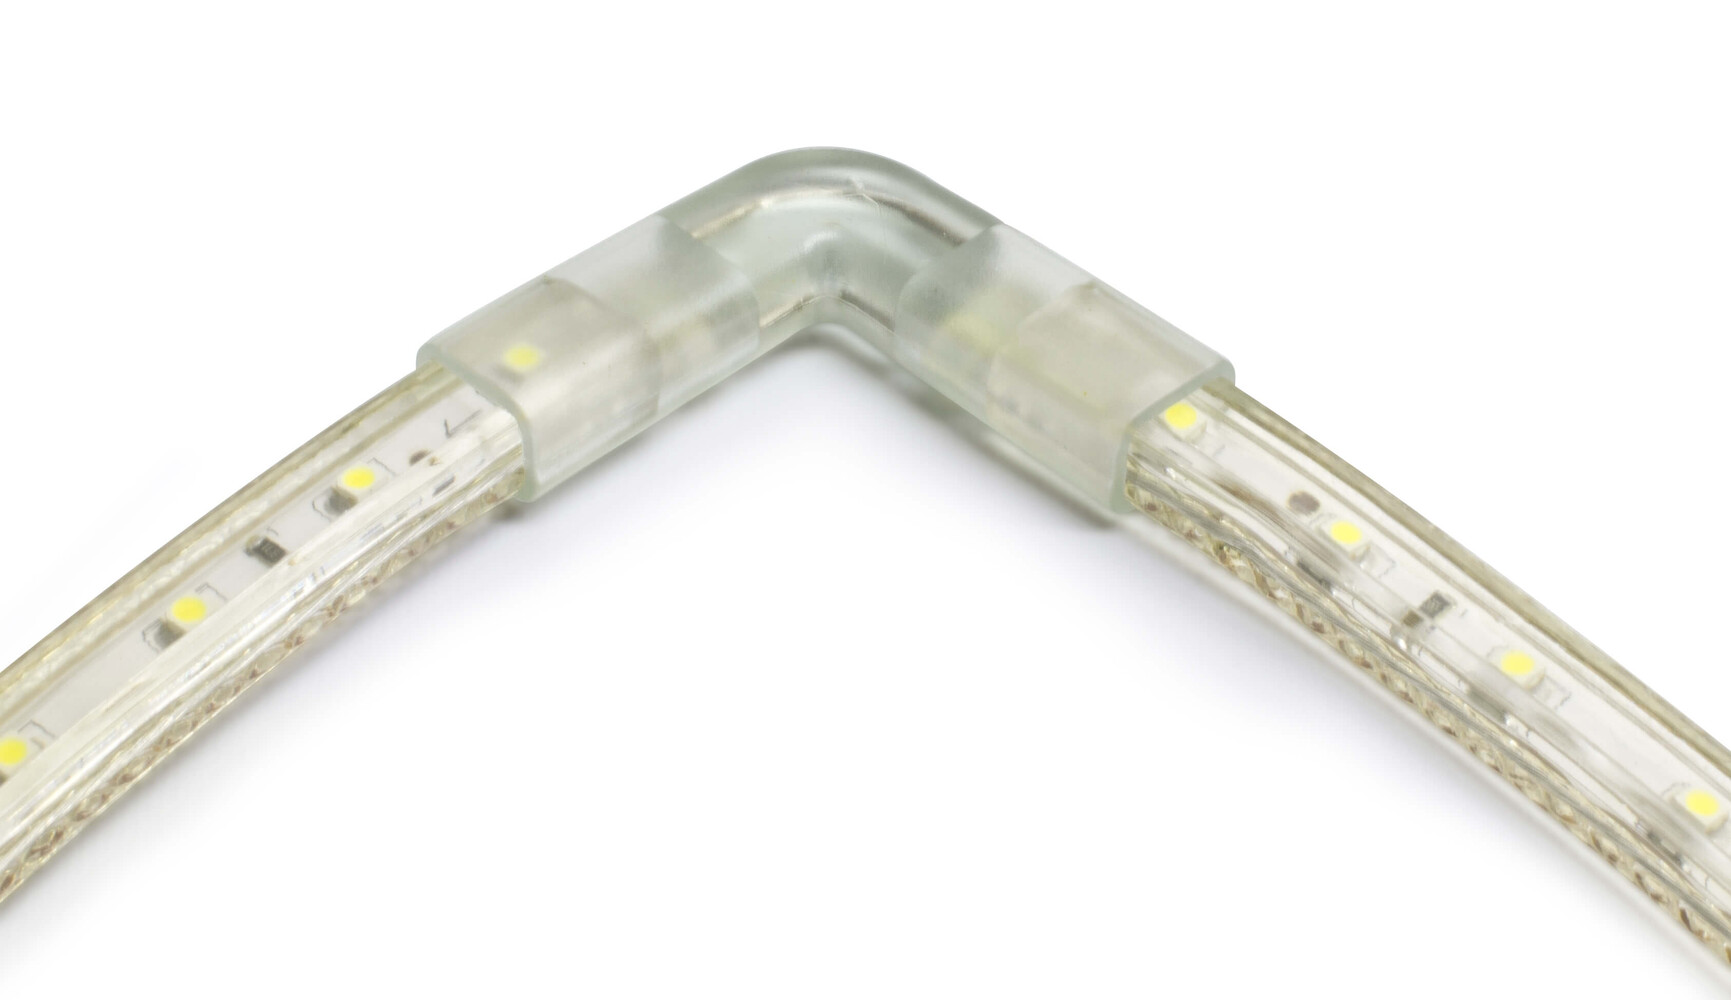 LED Streifen Verbinder in transparent von LED Universum - praktisch und vielseitig verwendbar für einfarbige LED Streifen